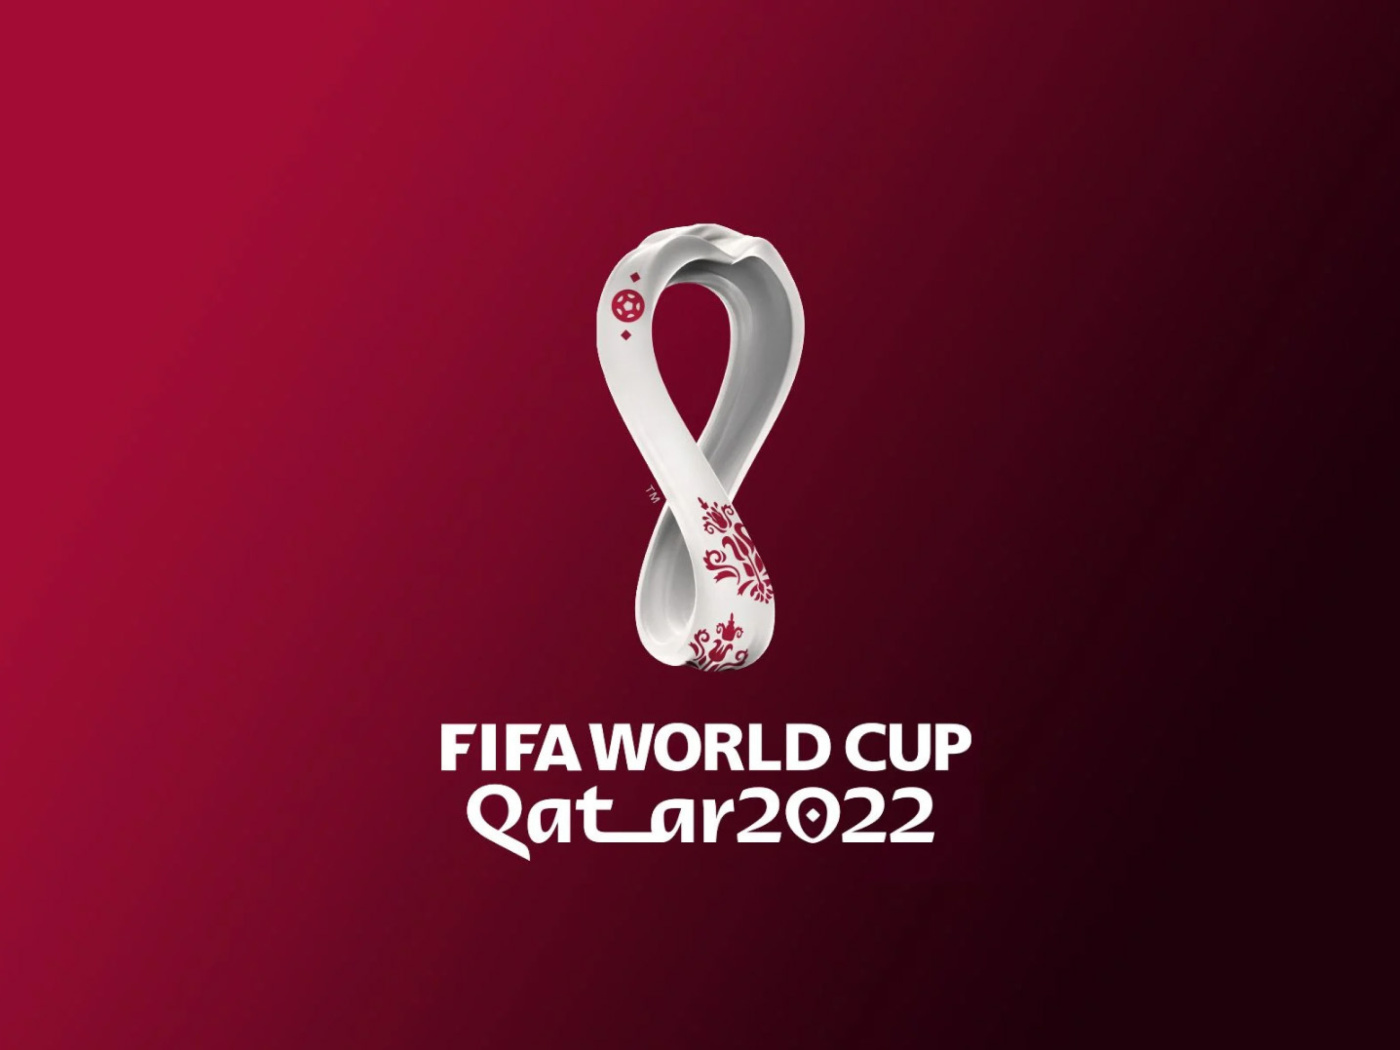 Das World Cup Qatar 2022 Wallpaper 1400x1050